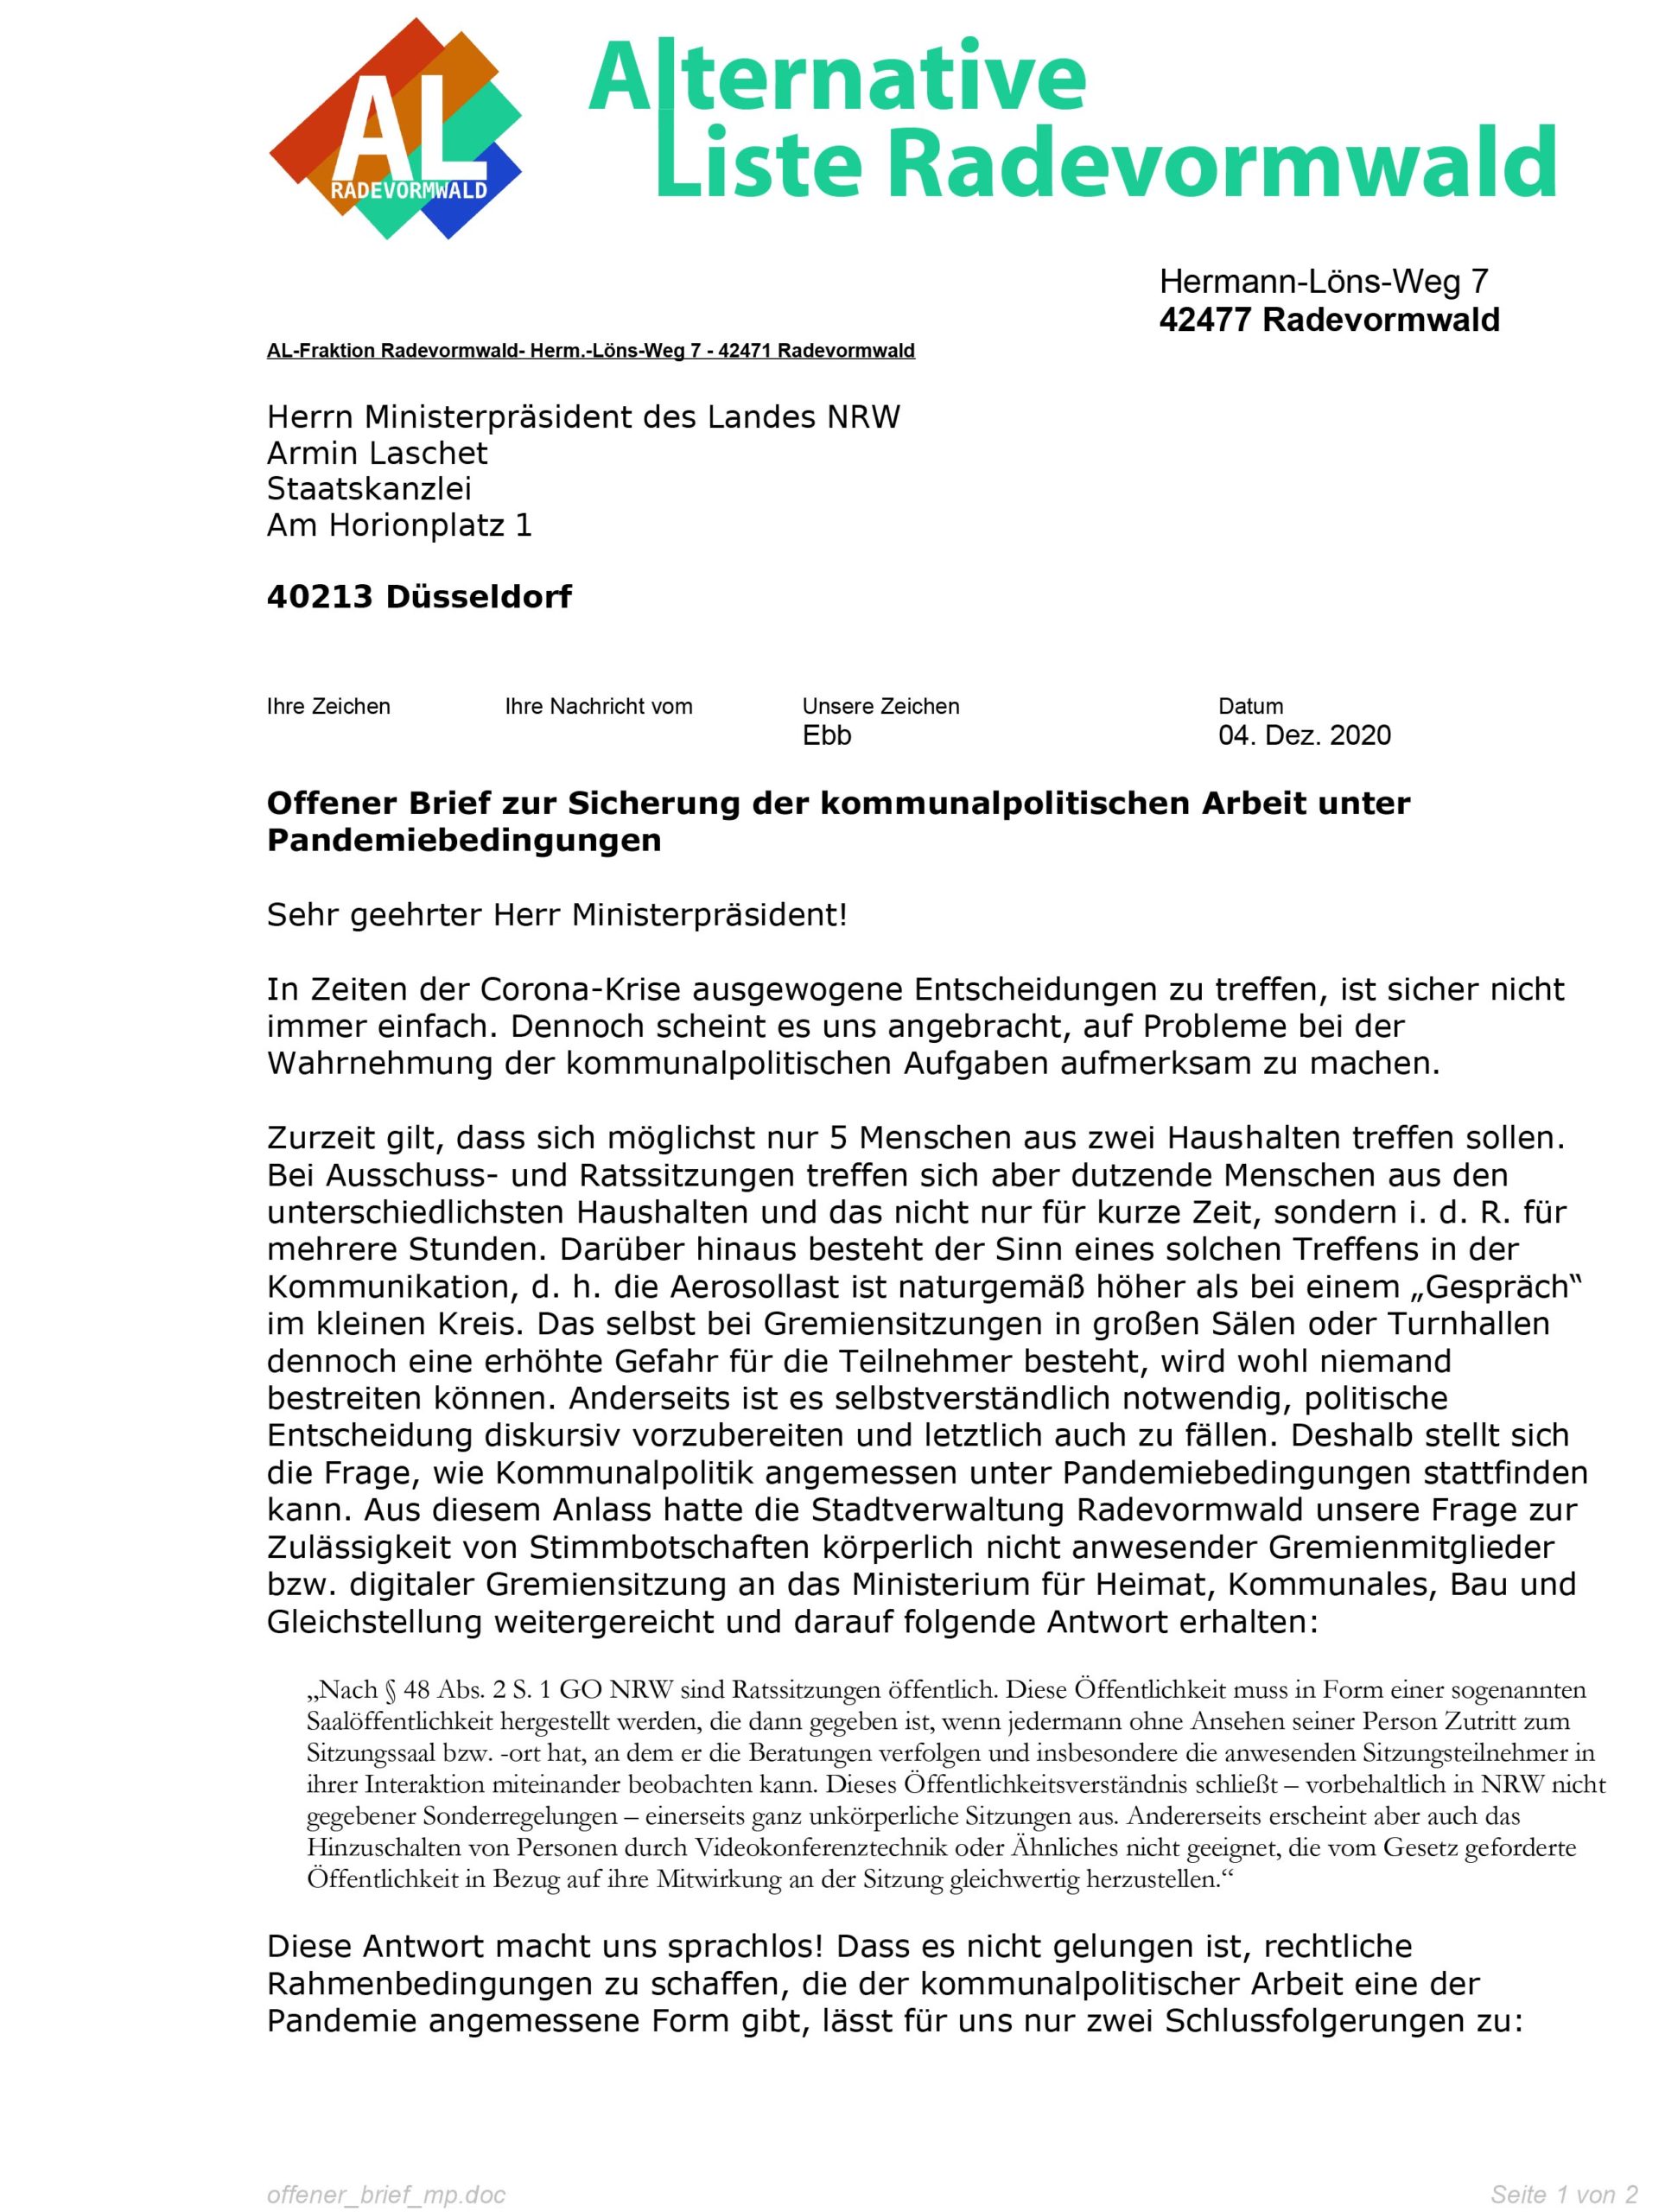 Offener Brief an den MP NRW